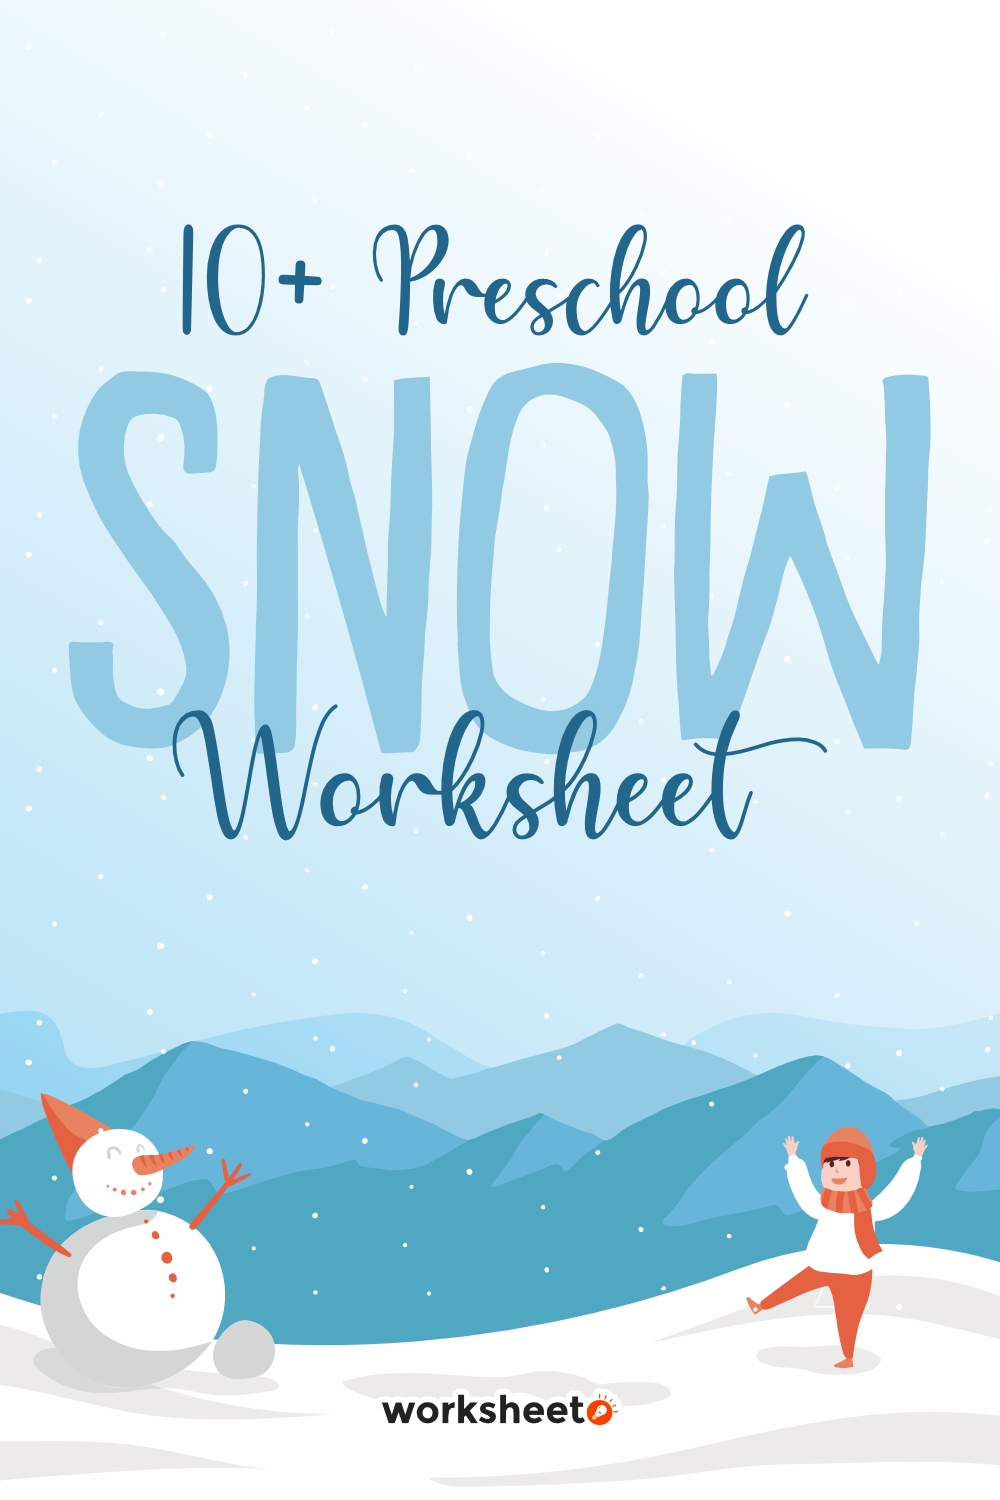 15 Images of Preschool Snow Worksheet